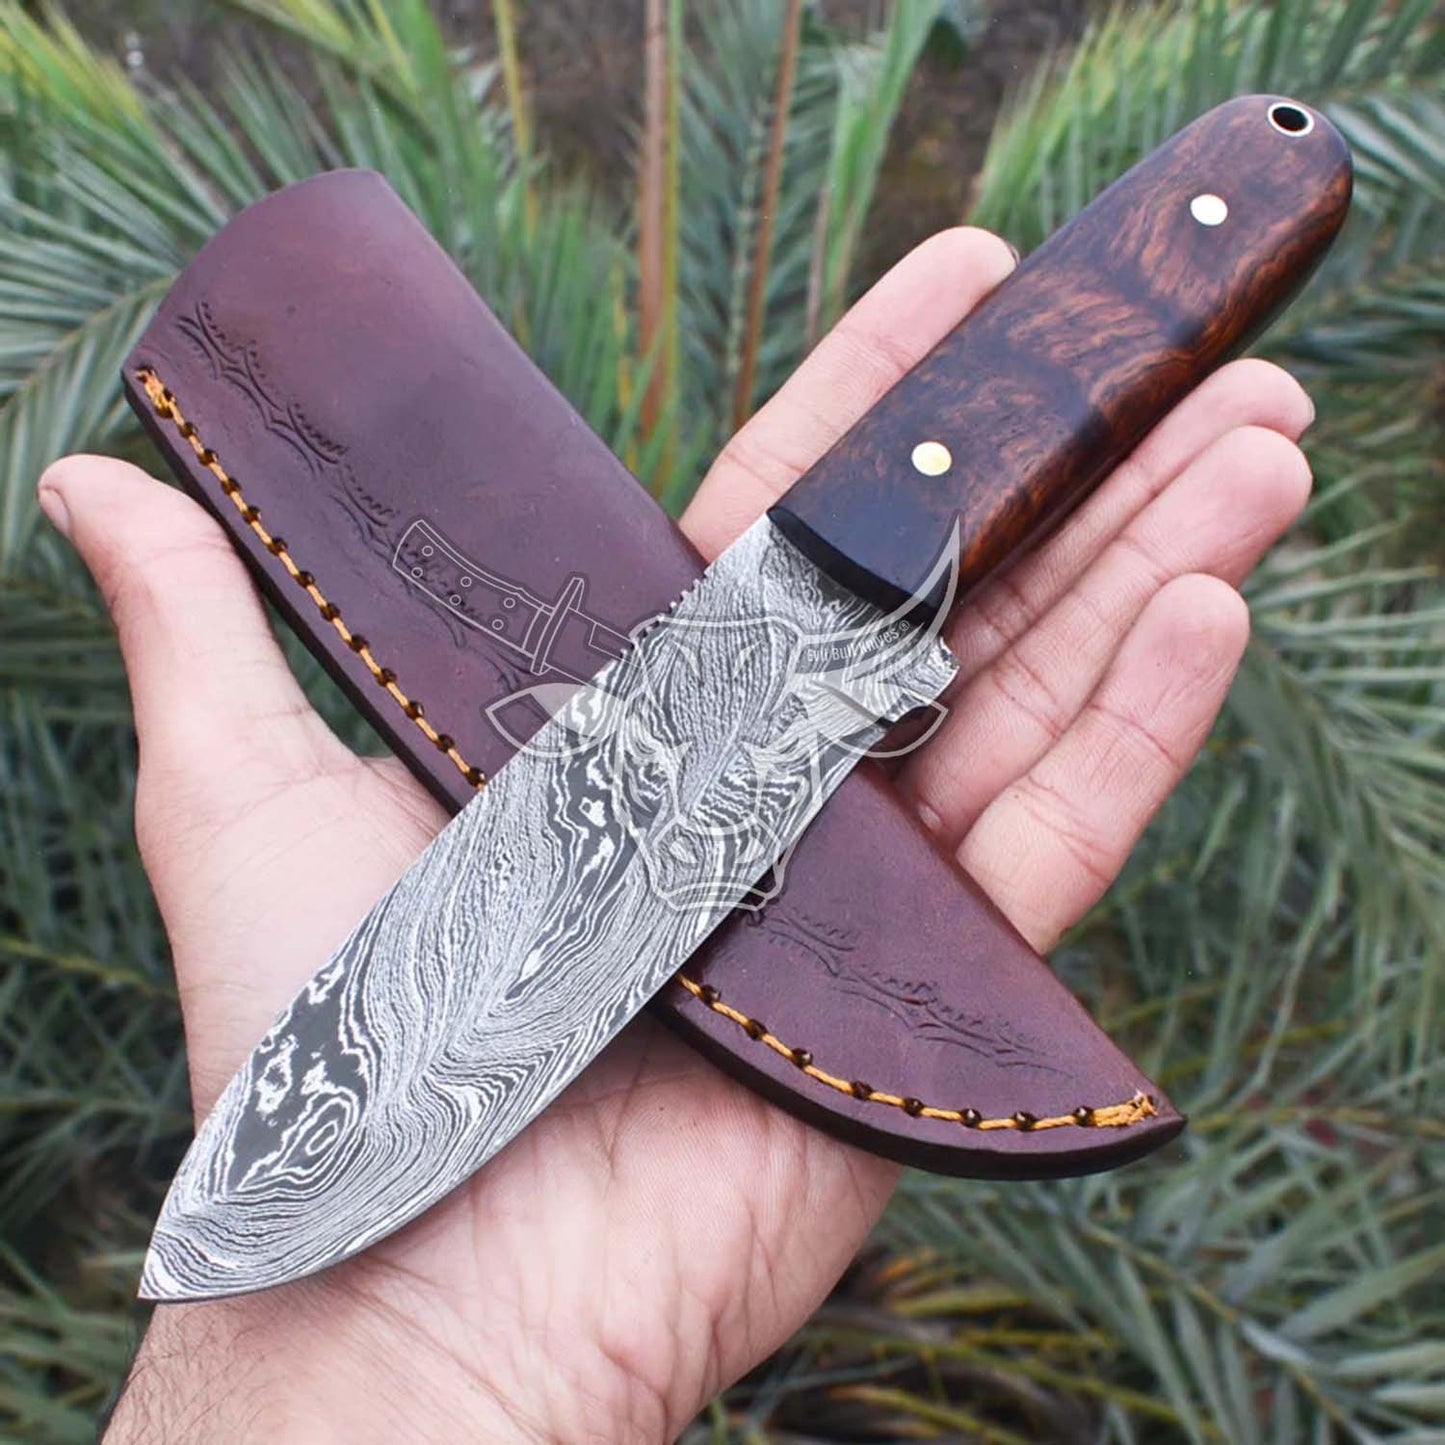 EBK-49 Custom Handmade Damascus Full Tang Hunting Knife Birthday Gift, Anniversary Gift, Christmas Gift For Him